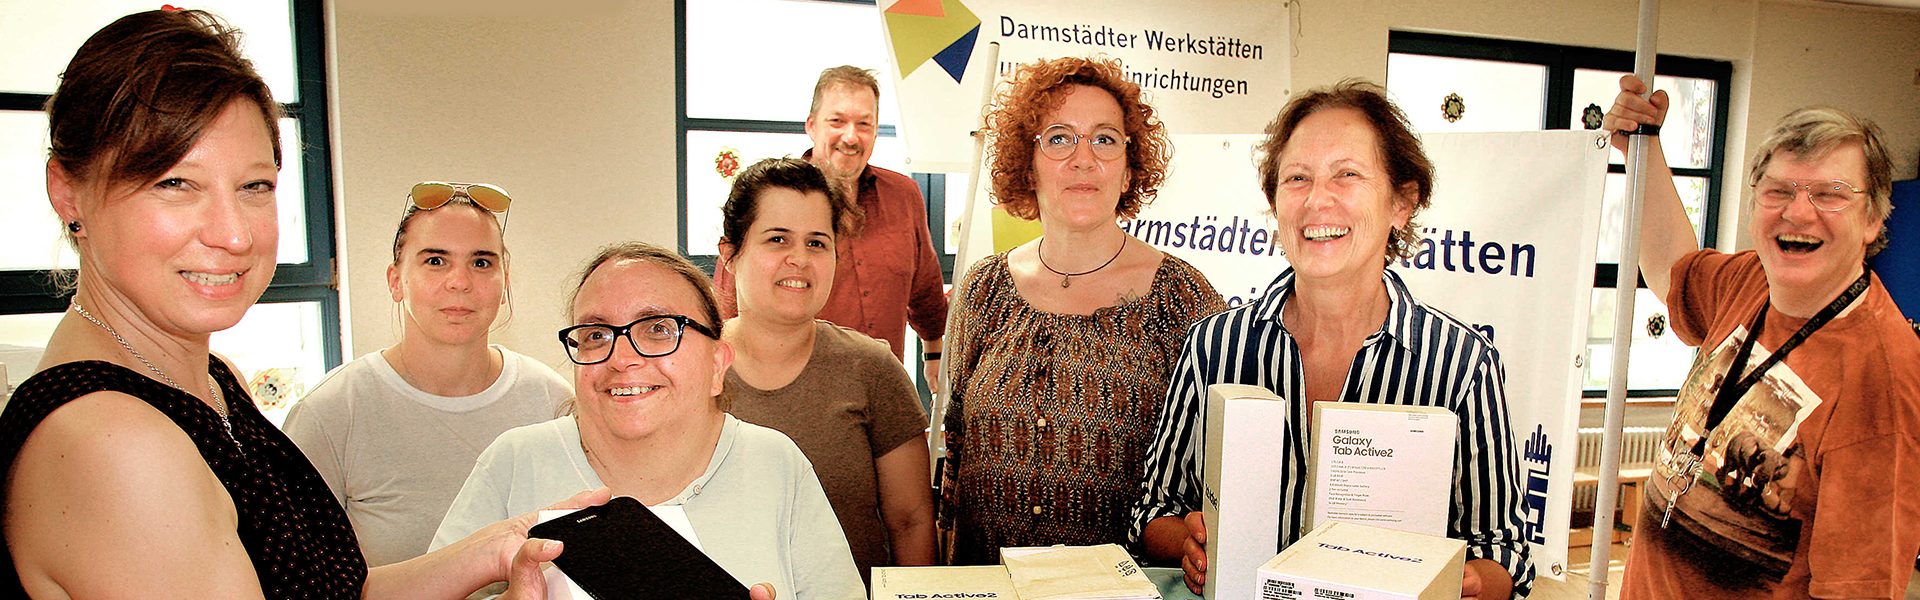 Header Bild Digitalstadt Darmstadt rüstet Darmstädter Werkstätten & Wohneinrichtungen mit Tablets aus